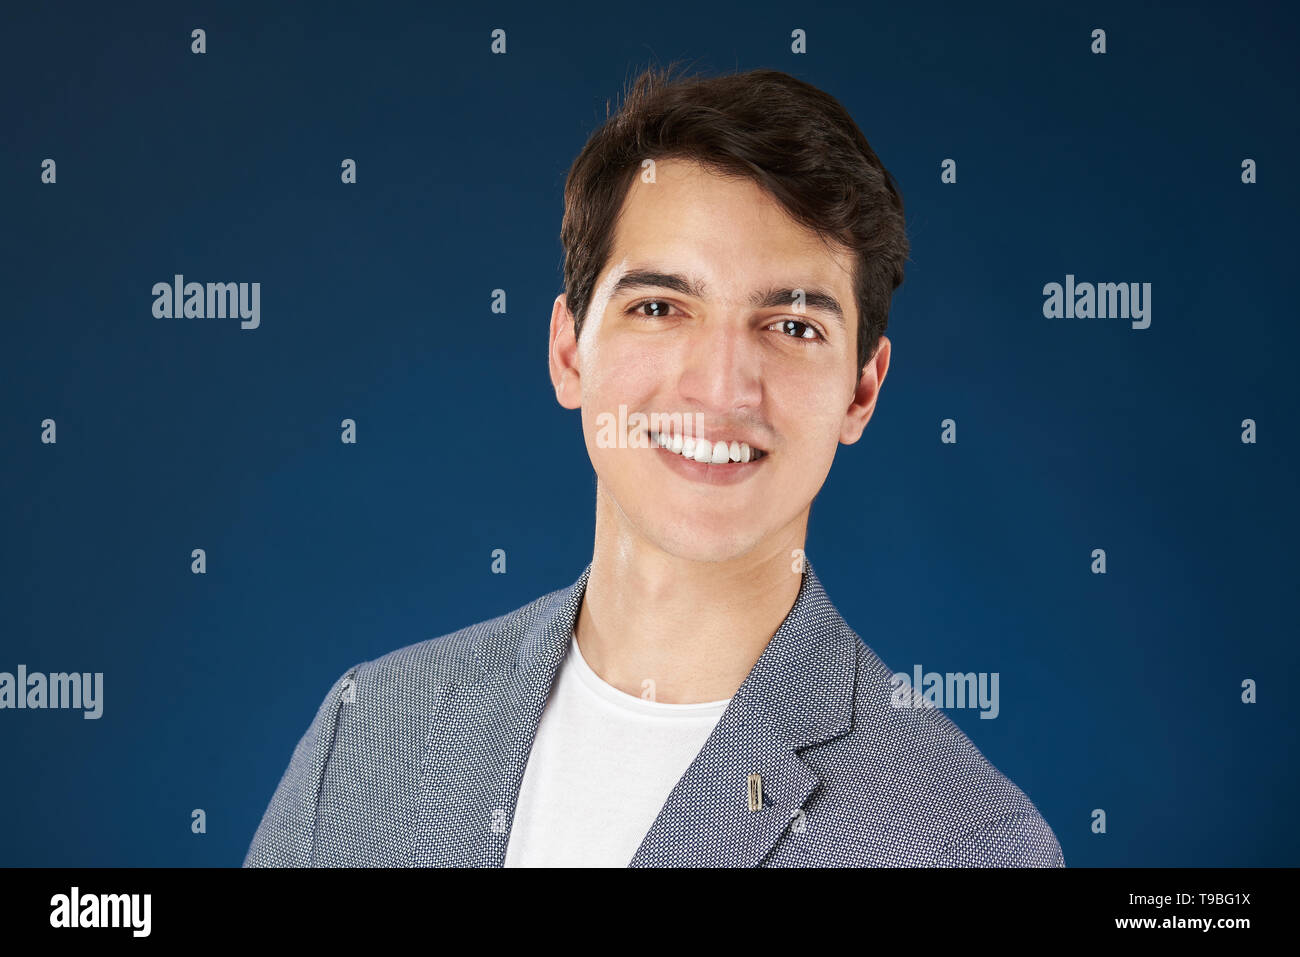 Headshot Ritratto di giovane uomo sorridente isolato su sfondo blu Foto Stock